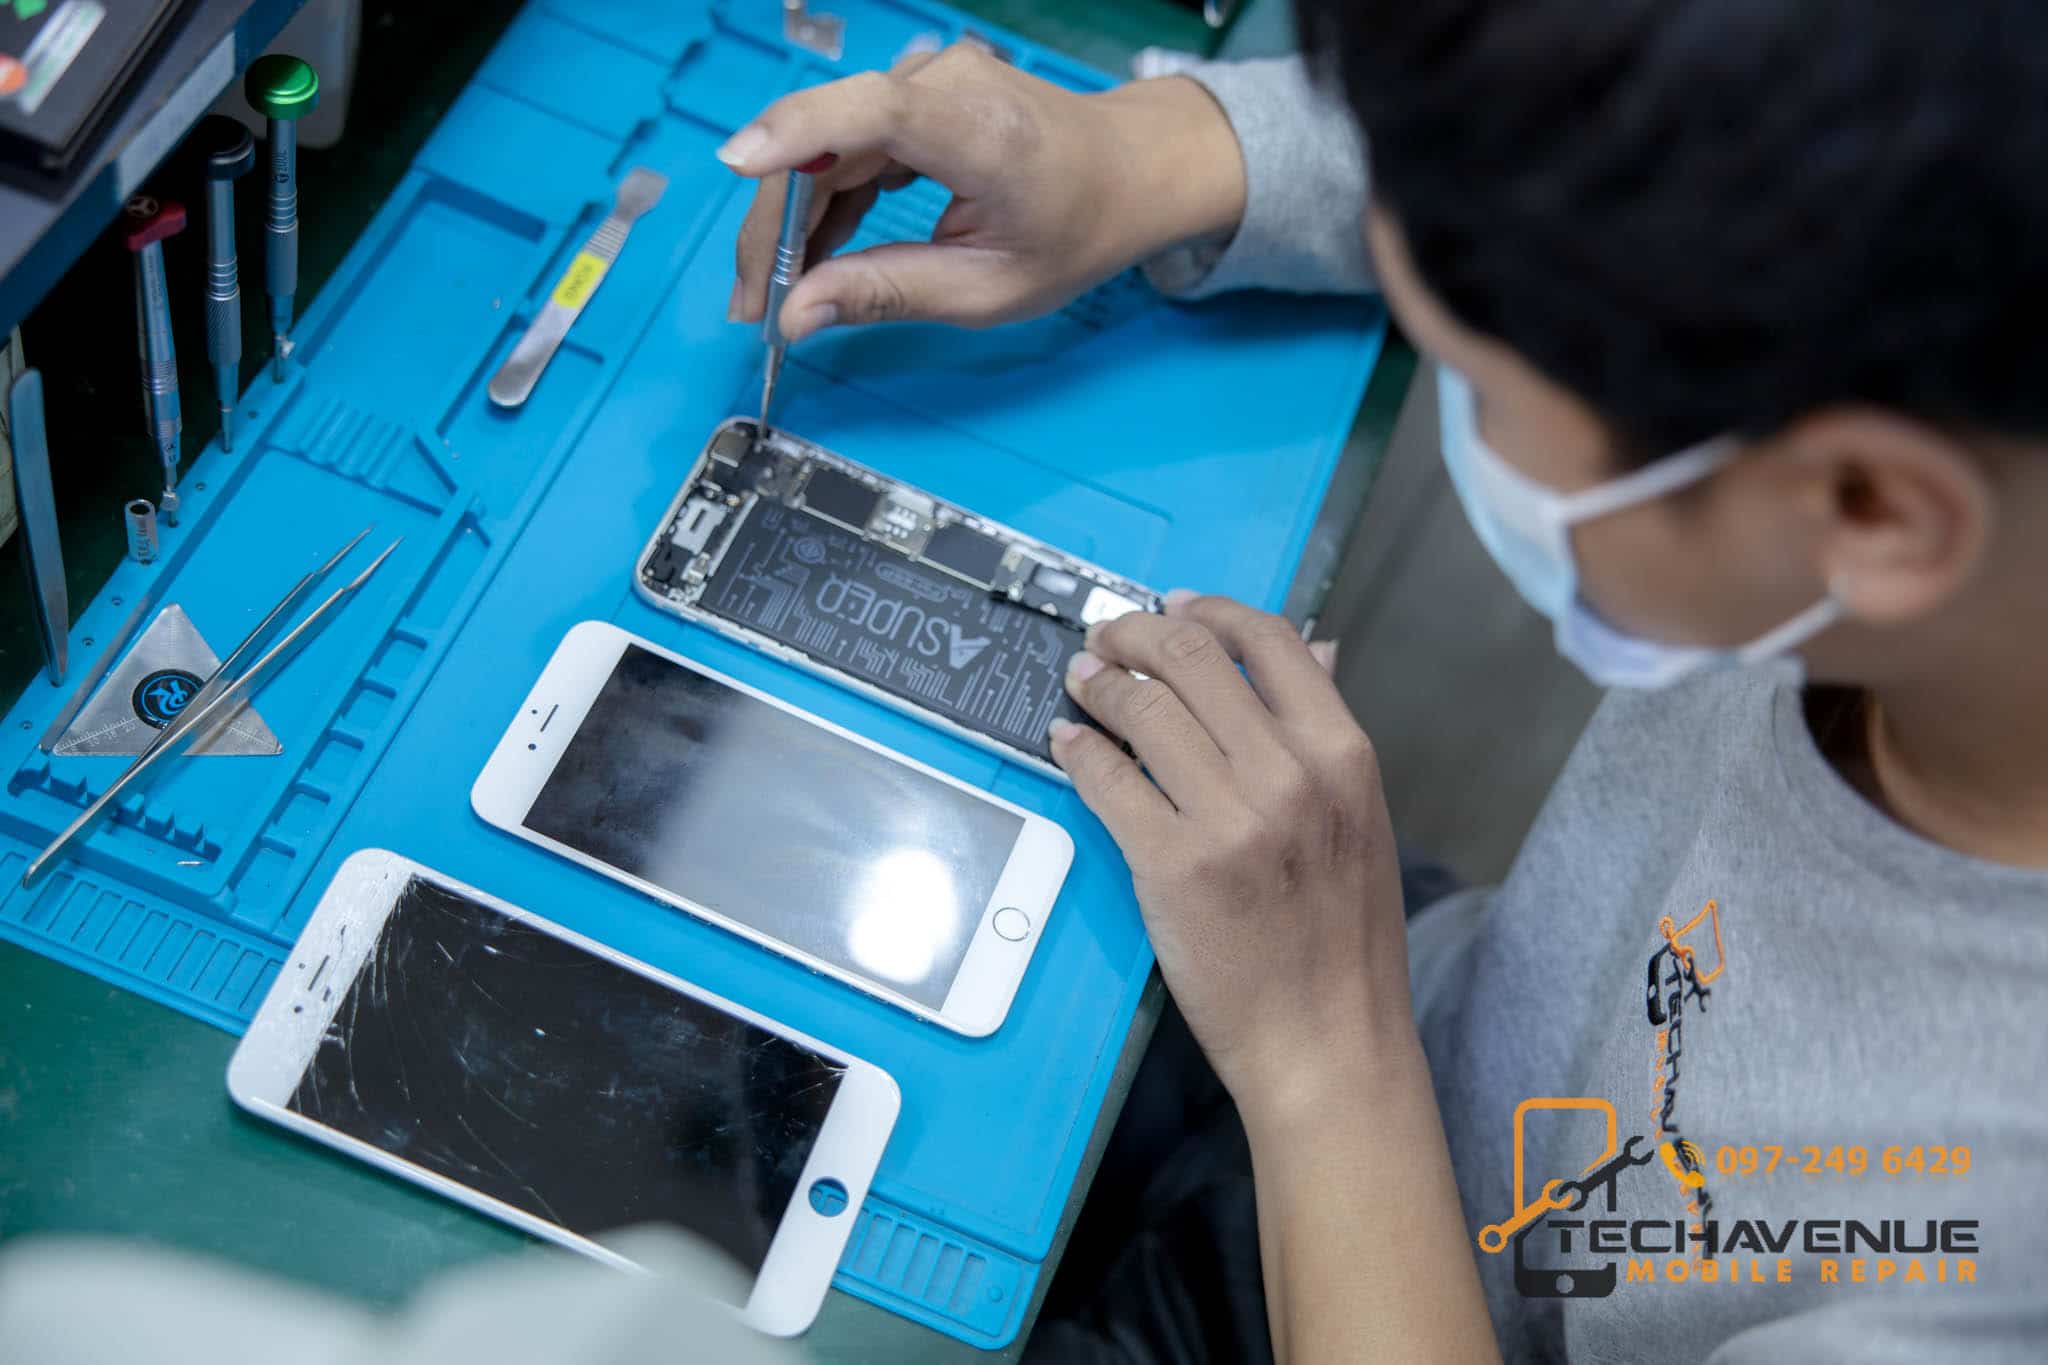 มือถือพัง ทำไมต้องซ่อมที่ TECH AVENUE เทคอเวนิวถึงดีที่สุด 🥇 ศูนย์ซ่อม โทรศัพท์มือถือ มือถือทุกรุ่น ทุกยี่ห้อ iPhone | Apple | Samsung | Huawei